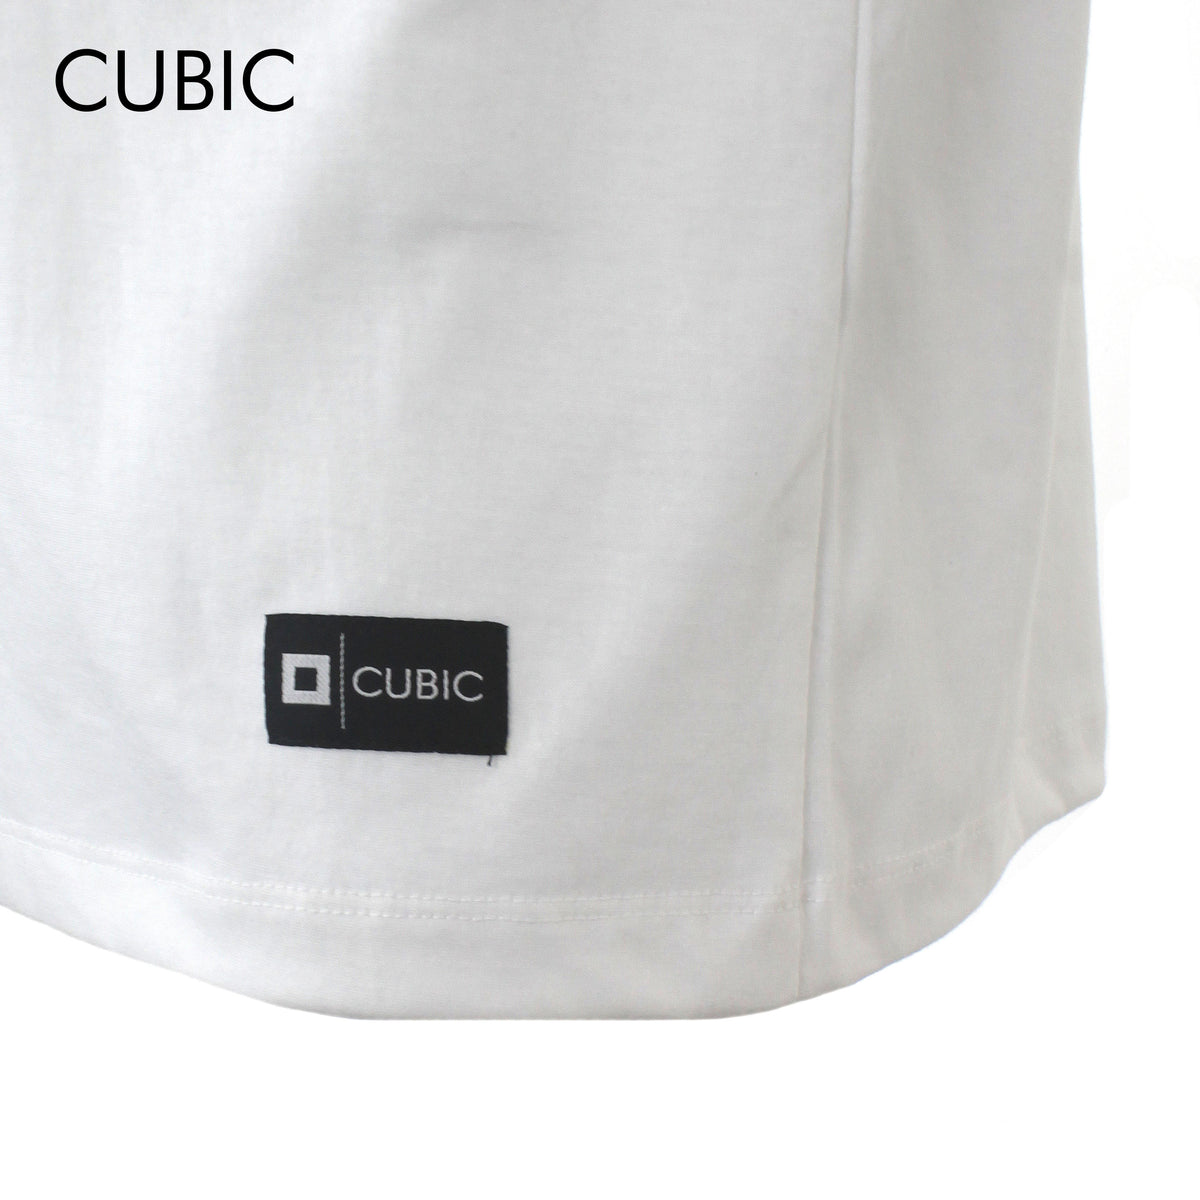 Cubic Men Round Neck Tees T-shirt Plain Shirt Top Top for Men - CMJ2243R